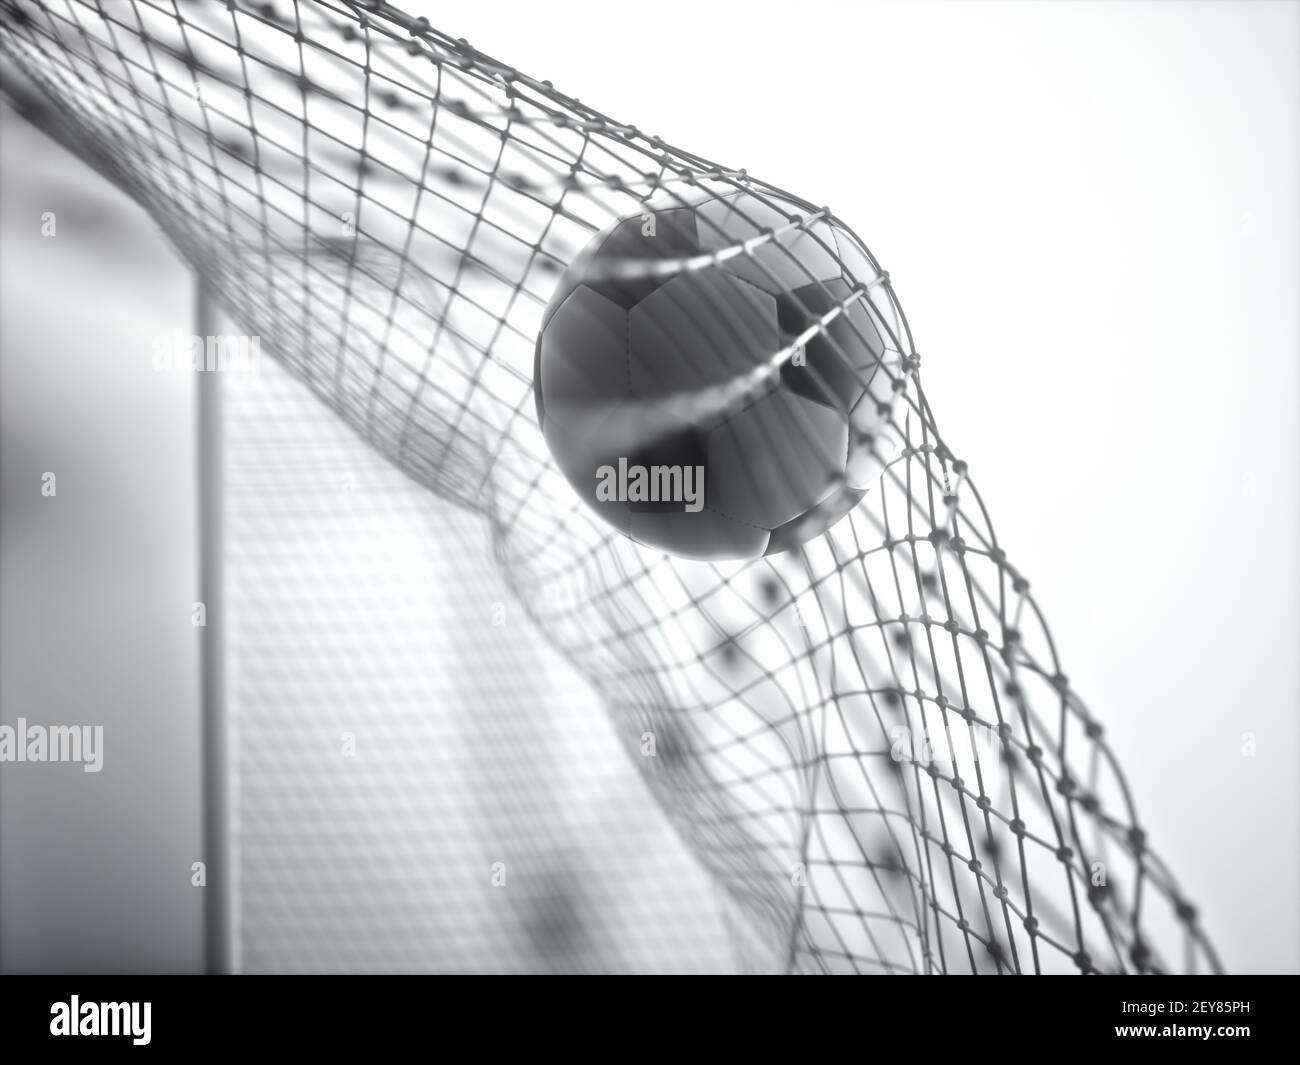 Ballon de football, marquant le but et déplaçant le filet. Illustration 3D, sur fond blanc. Banque D'Images